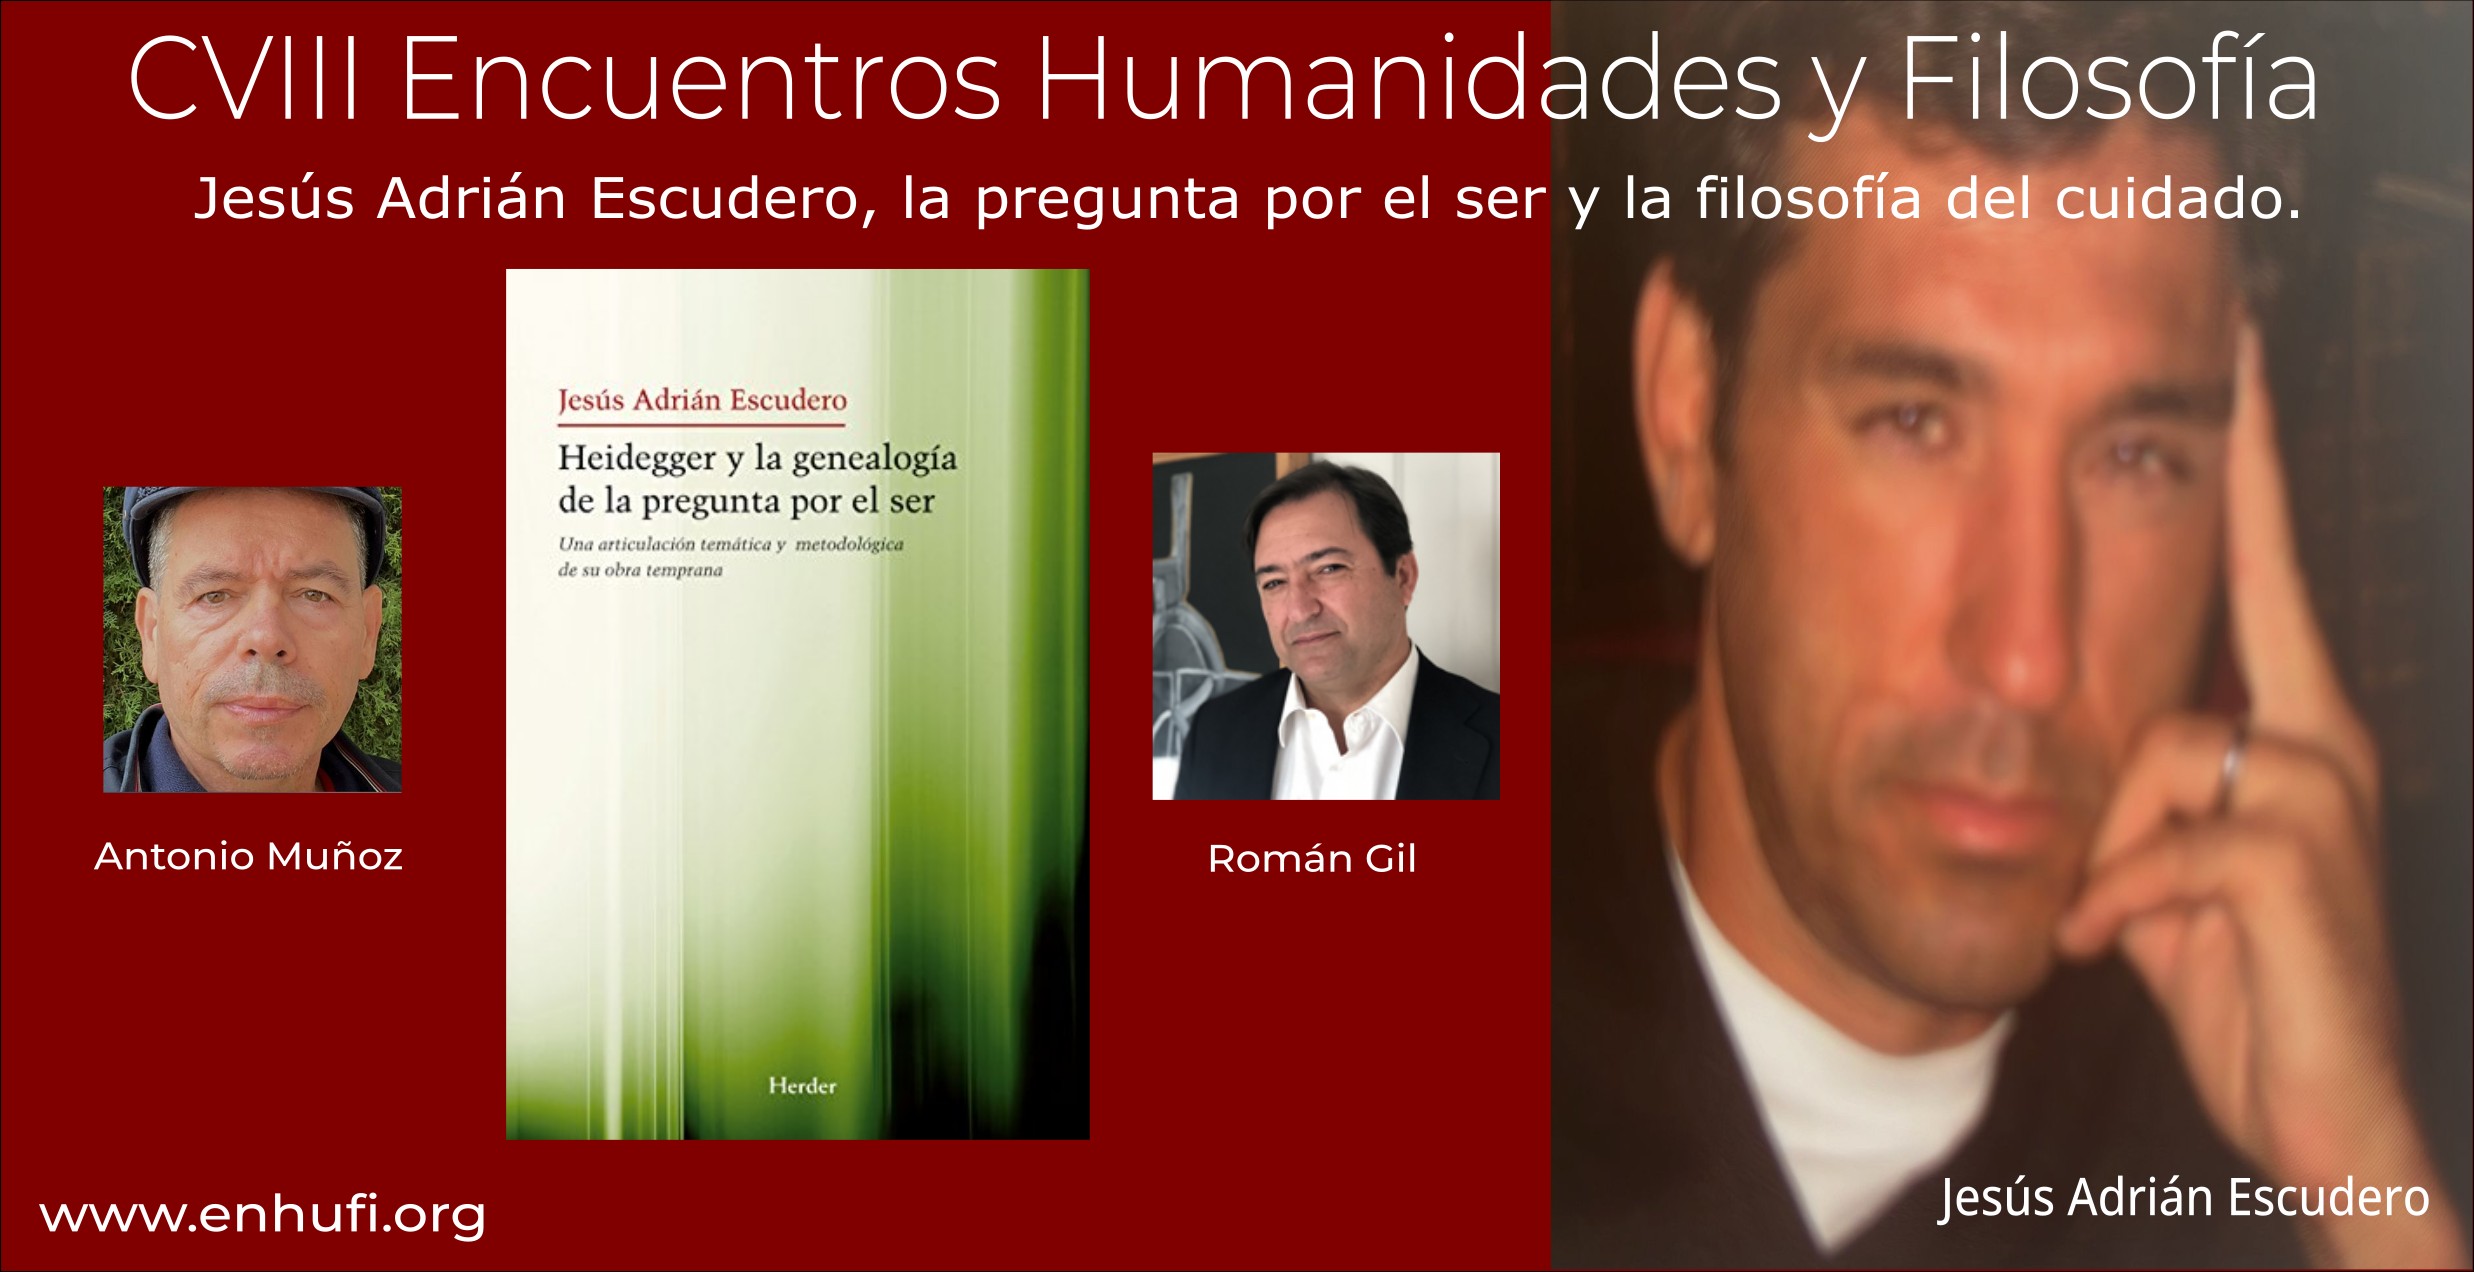 CVIII Encuentro Humanidades y Filosofía, Gabriel Albiac , Elogio de la Filosofía.